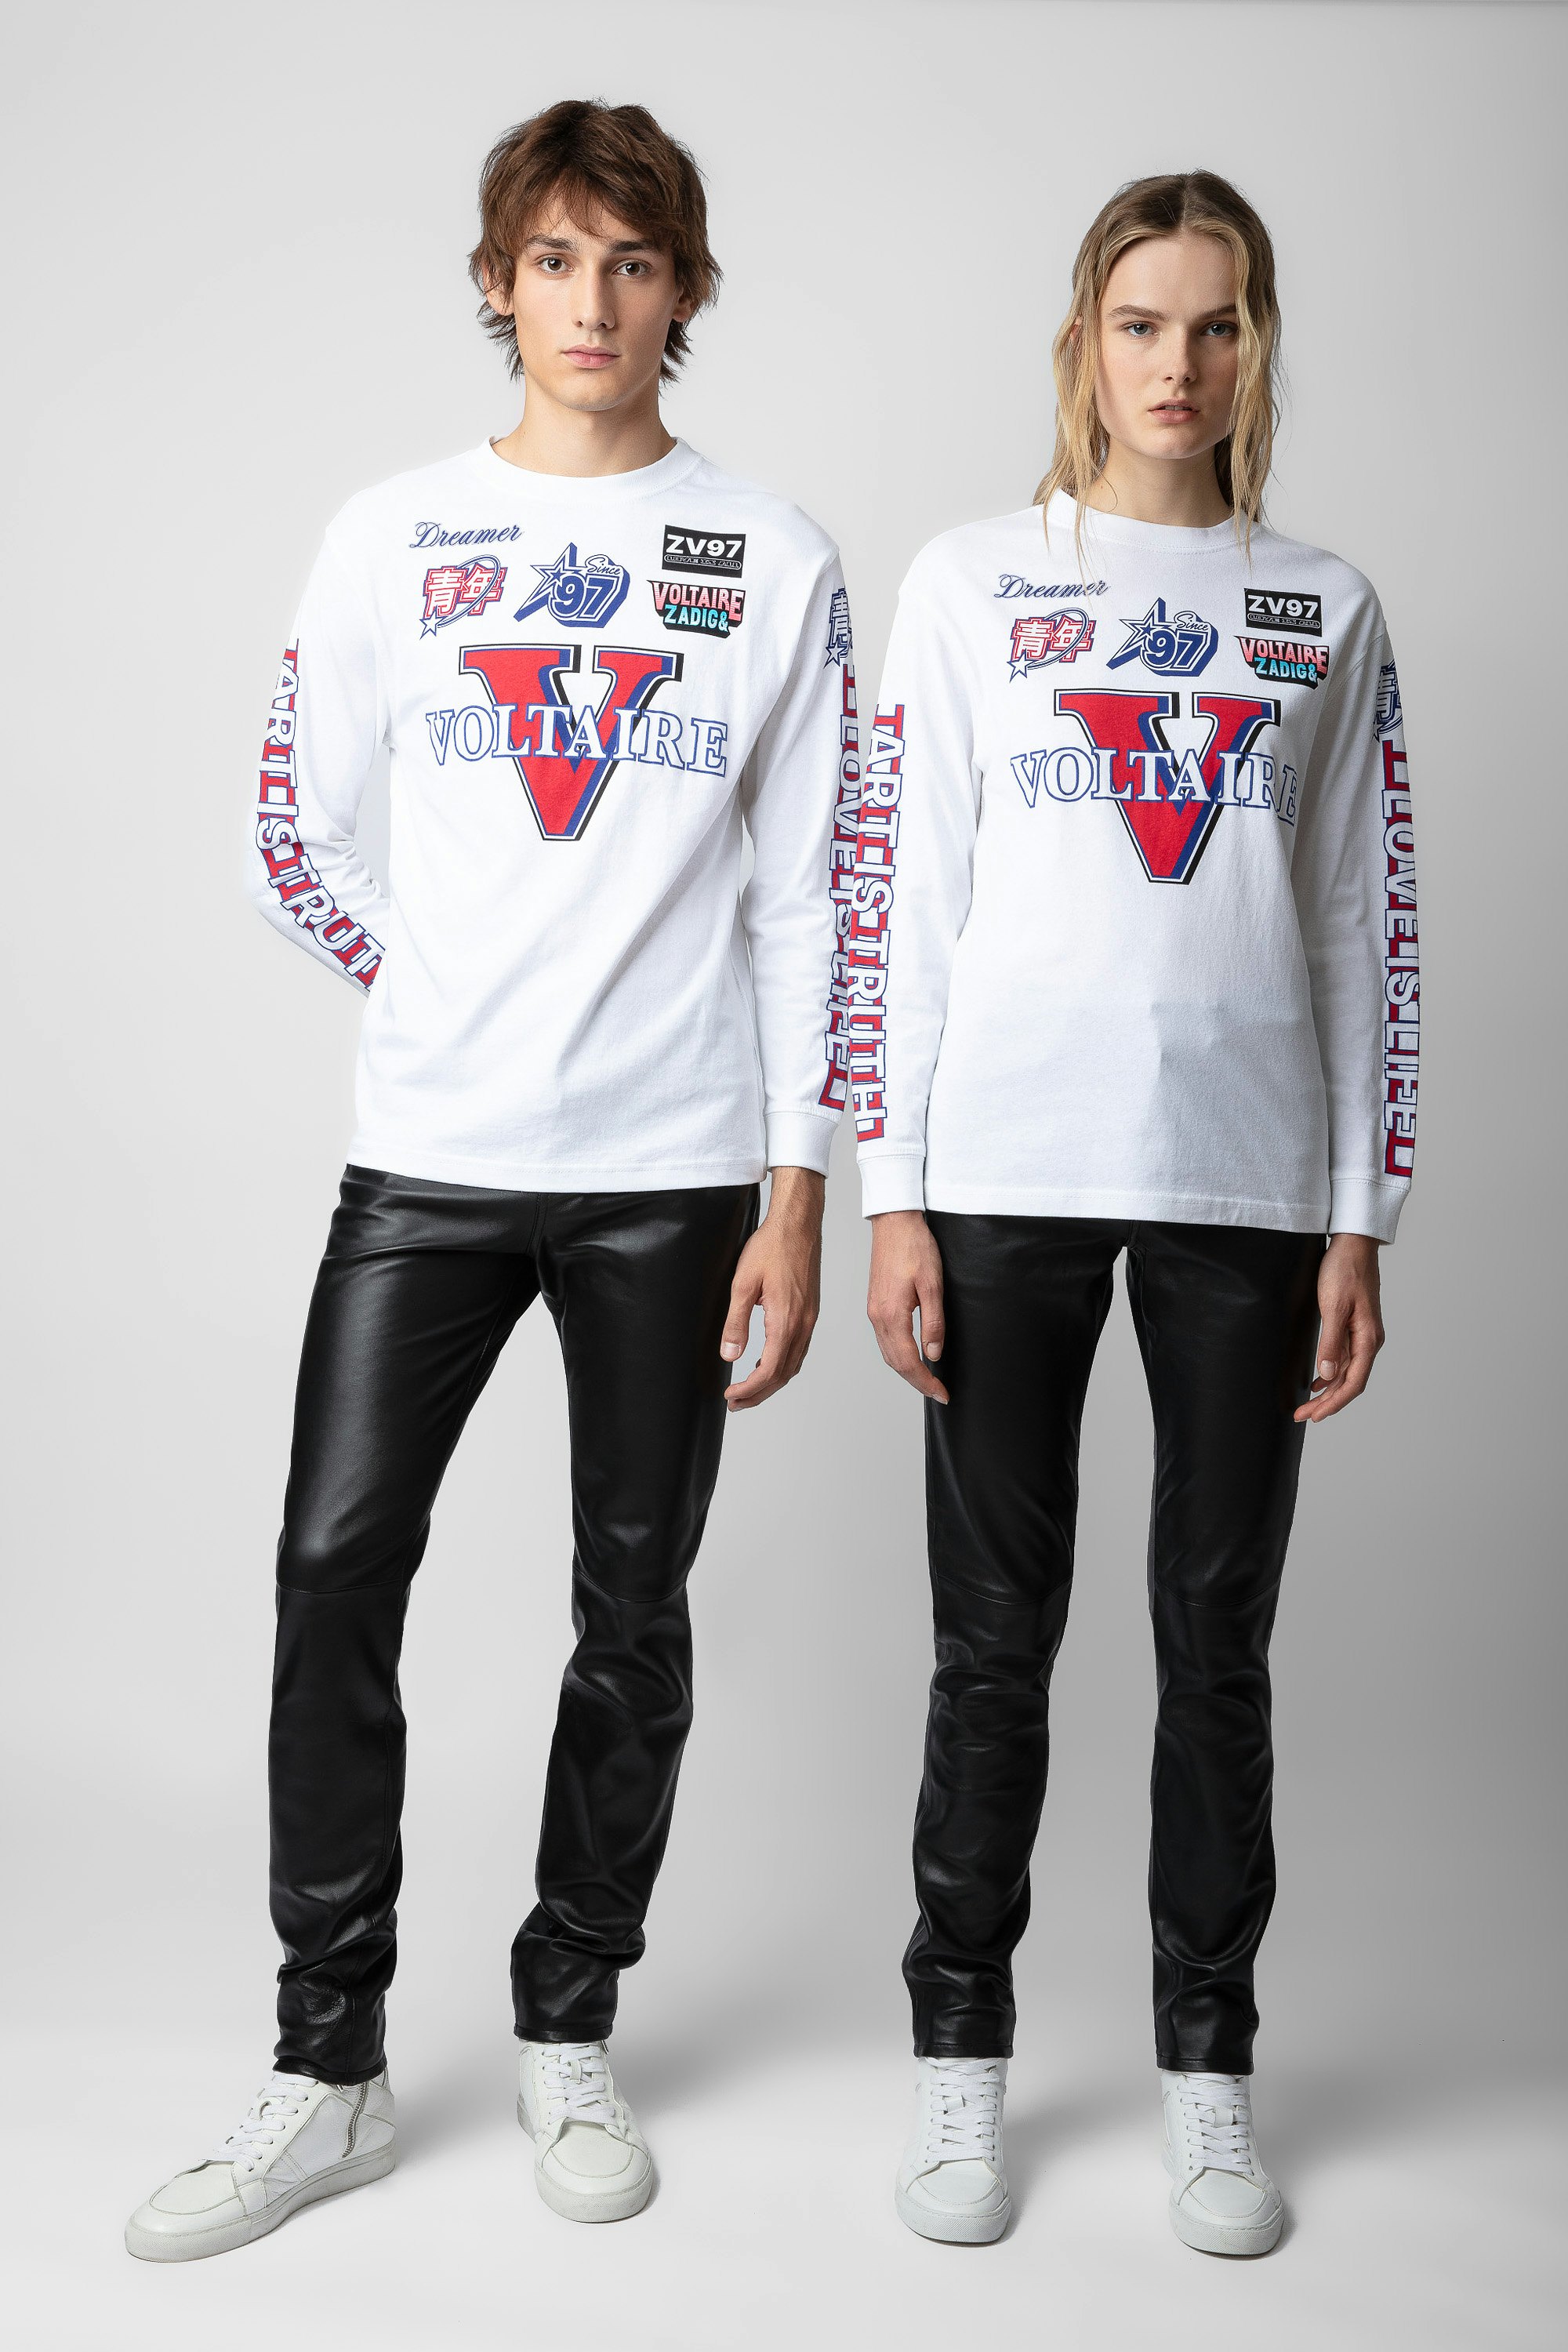 Camiseta Noane Voltaire - Camiseta blanca manga larga de algodón de inspiración motera unisex, con estampado de pines Voltaire y codos acolchados.